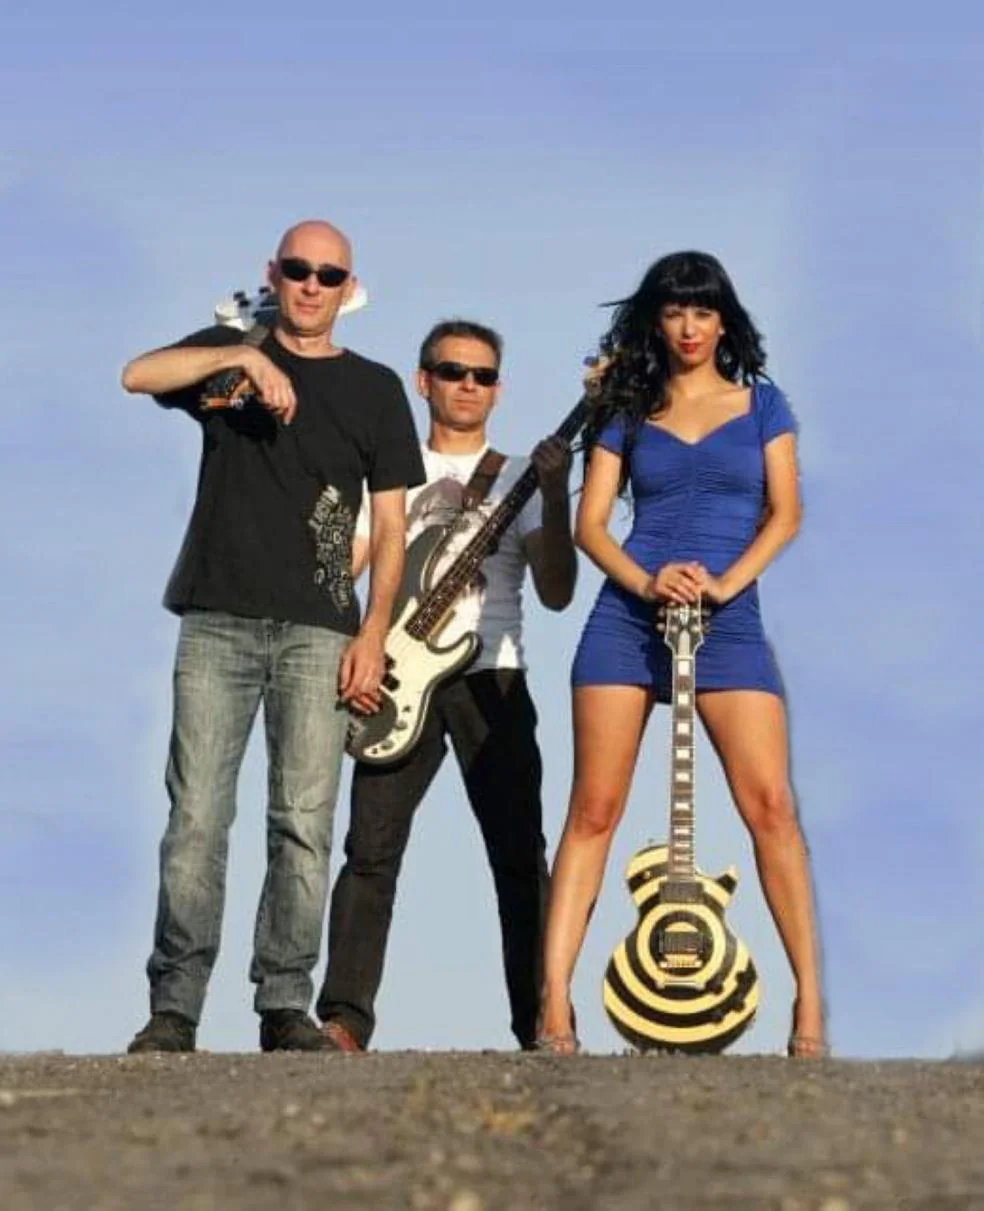 Luisma Beltrán, César Mendo y Ana Victoria Pérez, los tres miembros de la banda que continúan. / DAVID PALMA